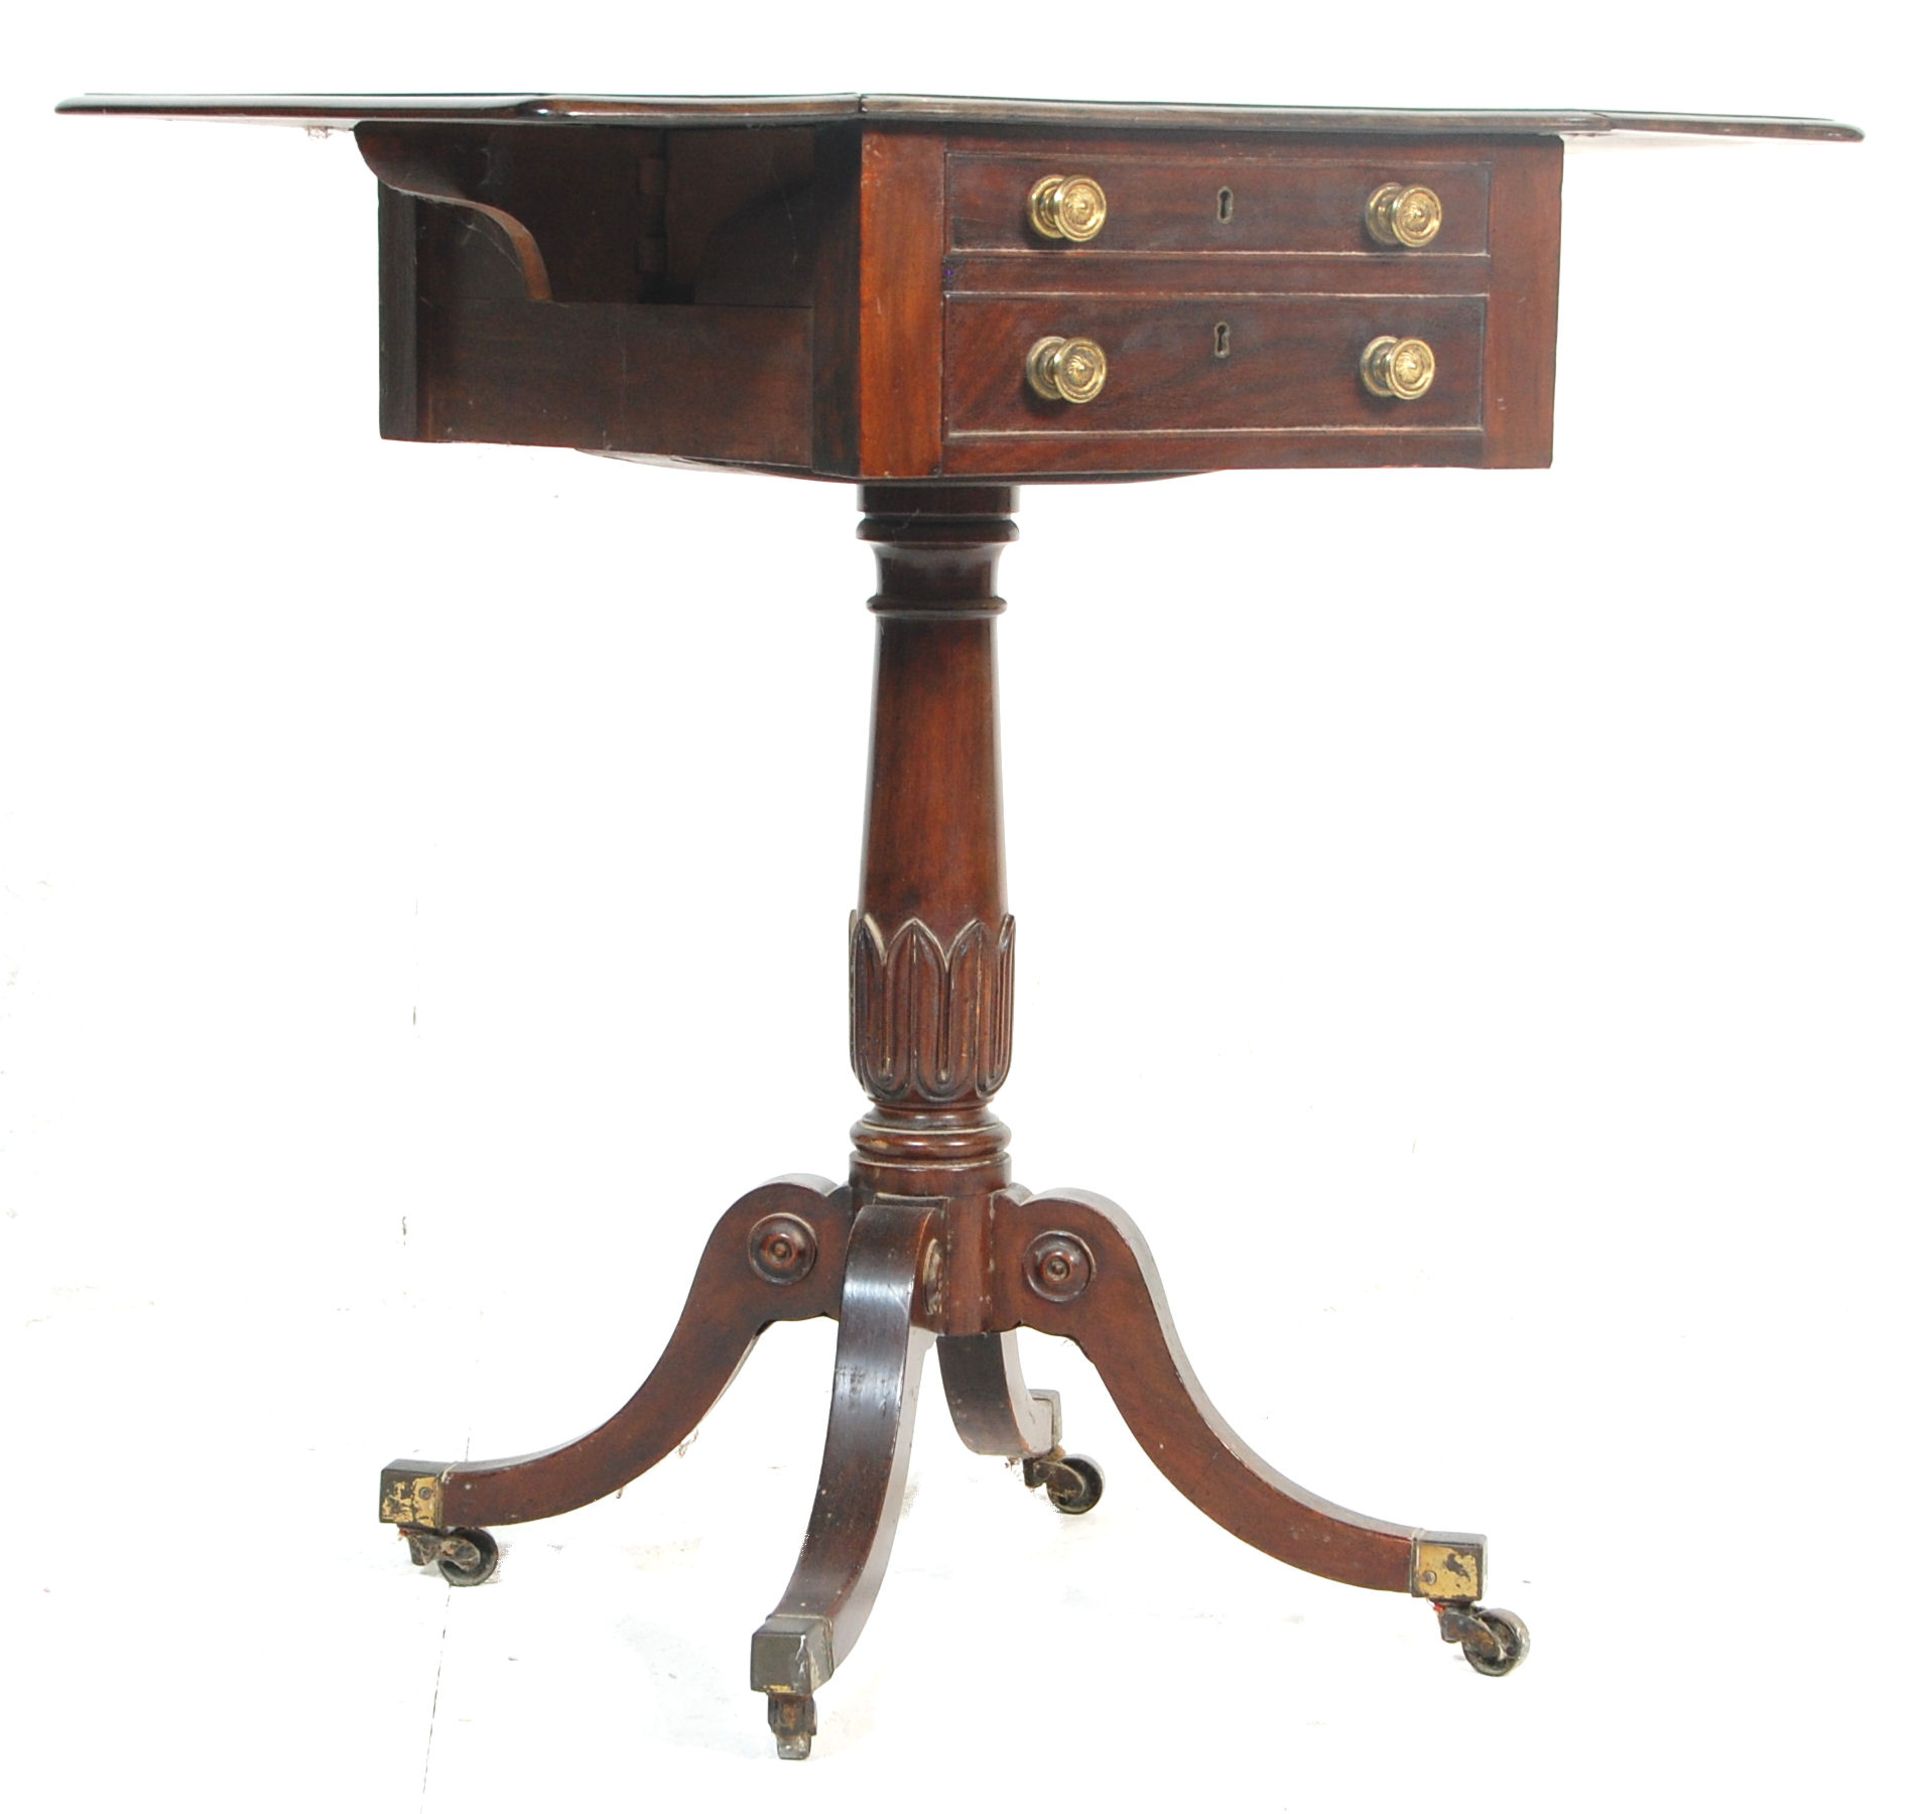 A 19th century George III mahogany drop leaf ladies tripod workbox table. The table raised on a